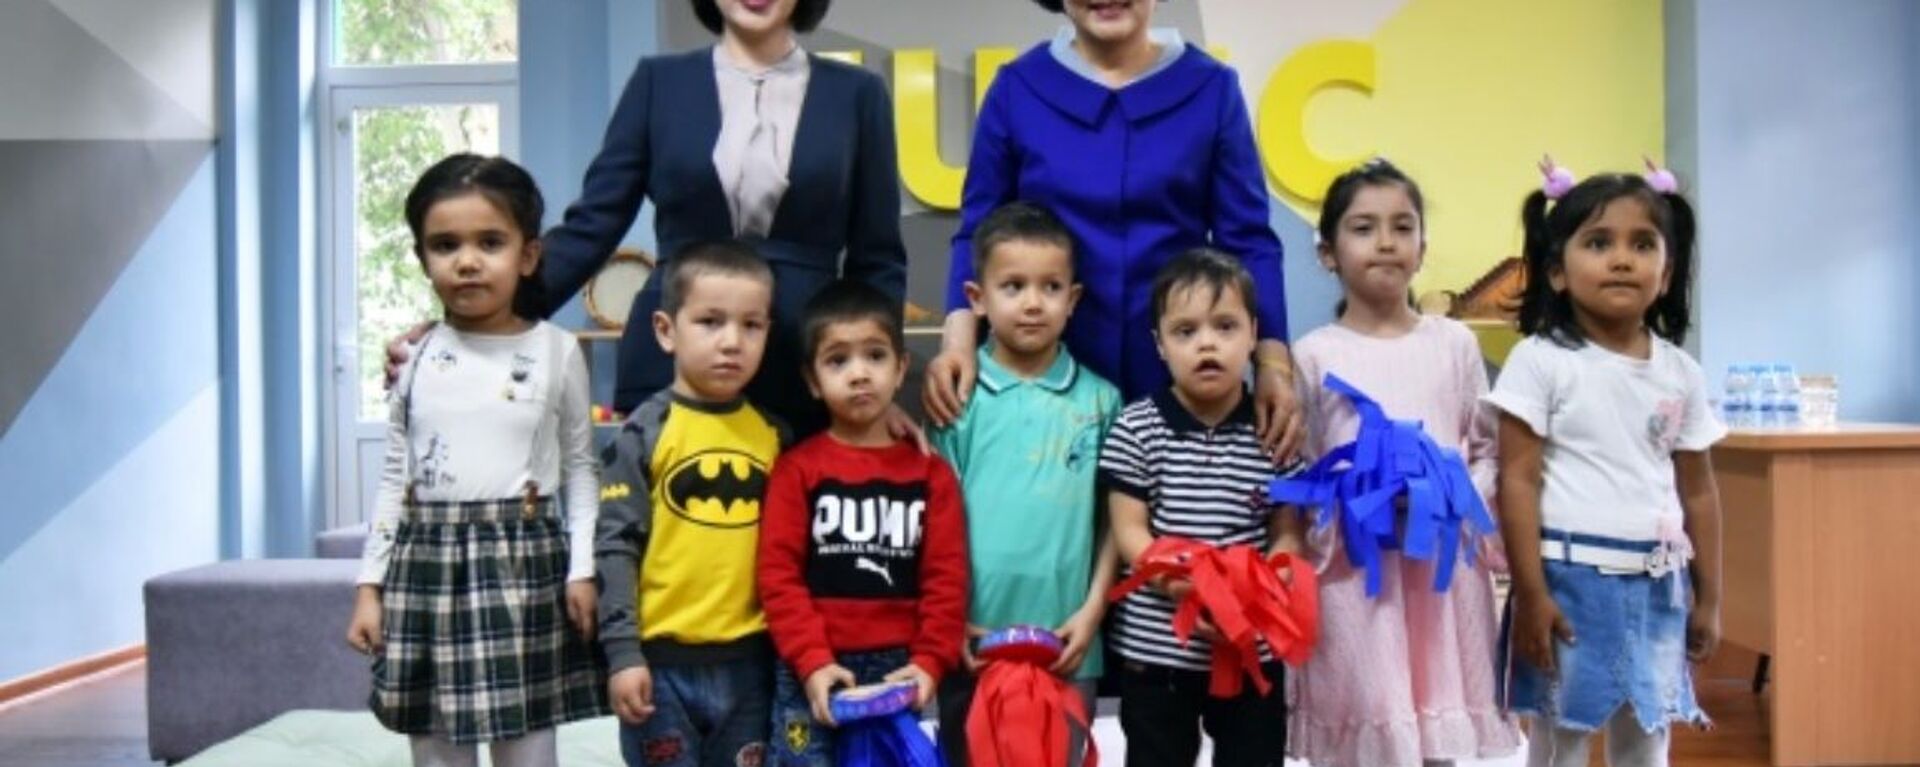 Первые леди Узбекистана и Кореи в окружении детей - Sputnik Узбекистан, 1920, 20.04.2019